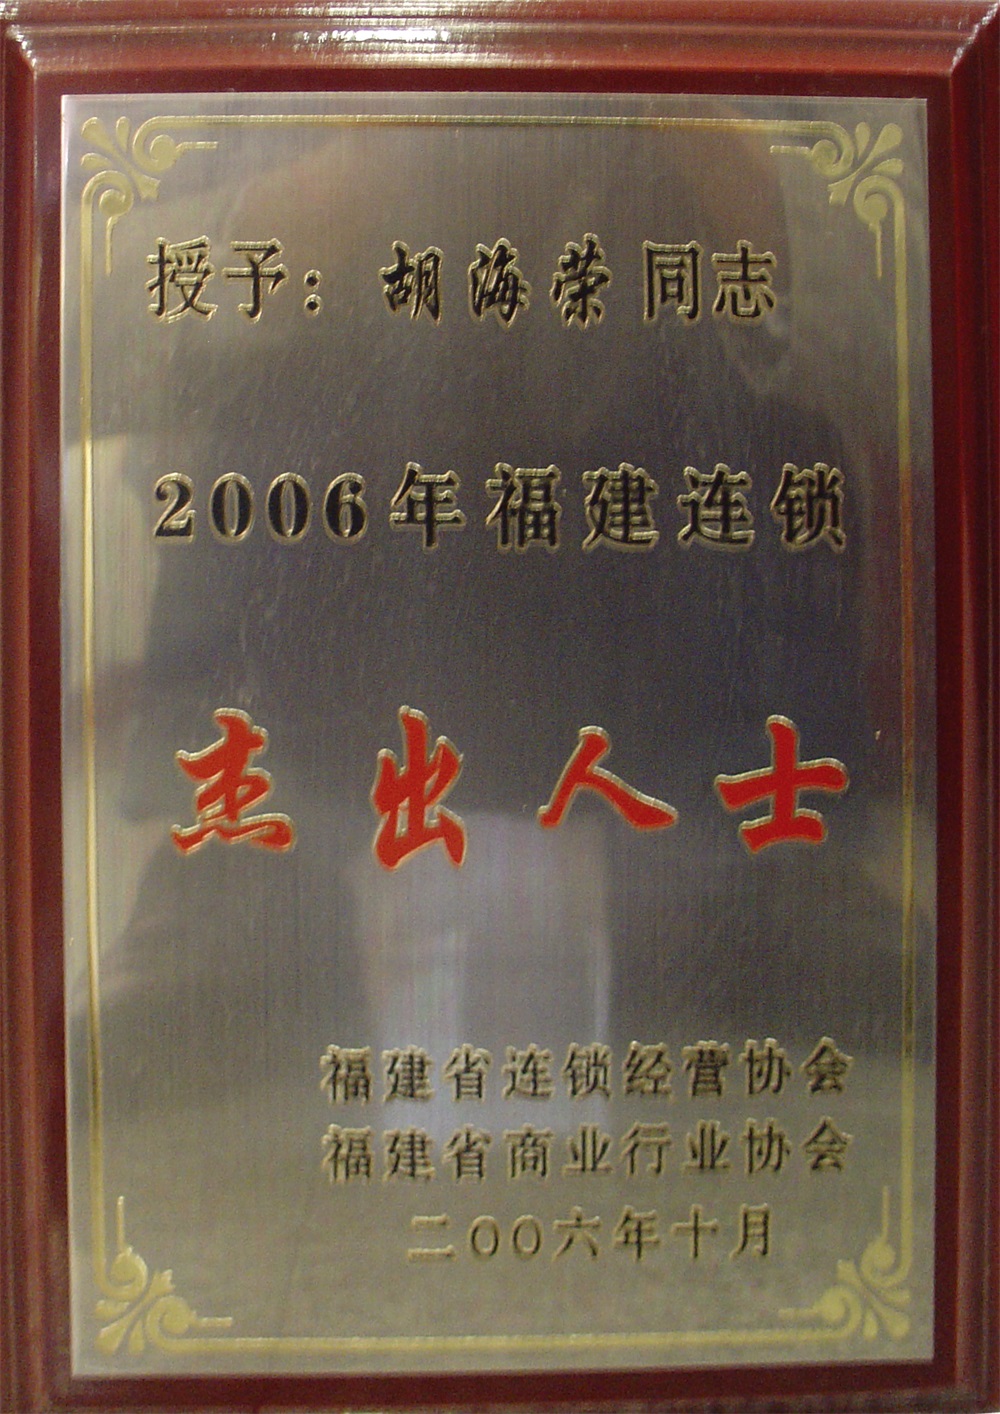 胡海榮“2006年福建連鎖杰出人士”